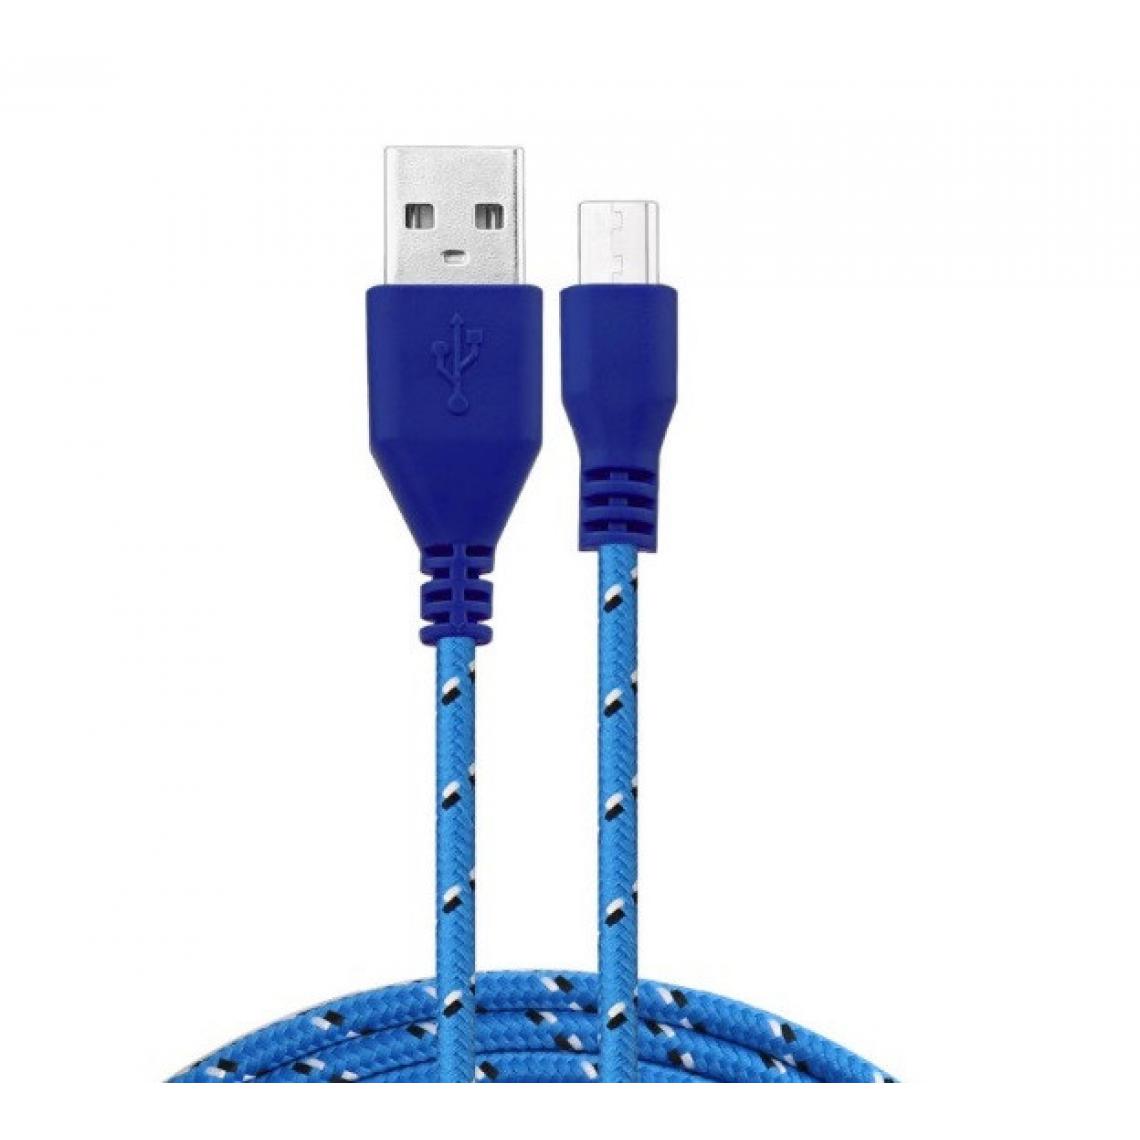 Shot - Cable Tresse 1m Micro USB pour Manette Xbox One Smartphone Android Chargeur USB Lacet Fil Nylon (BLEU) - Joystick